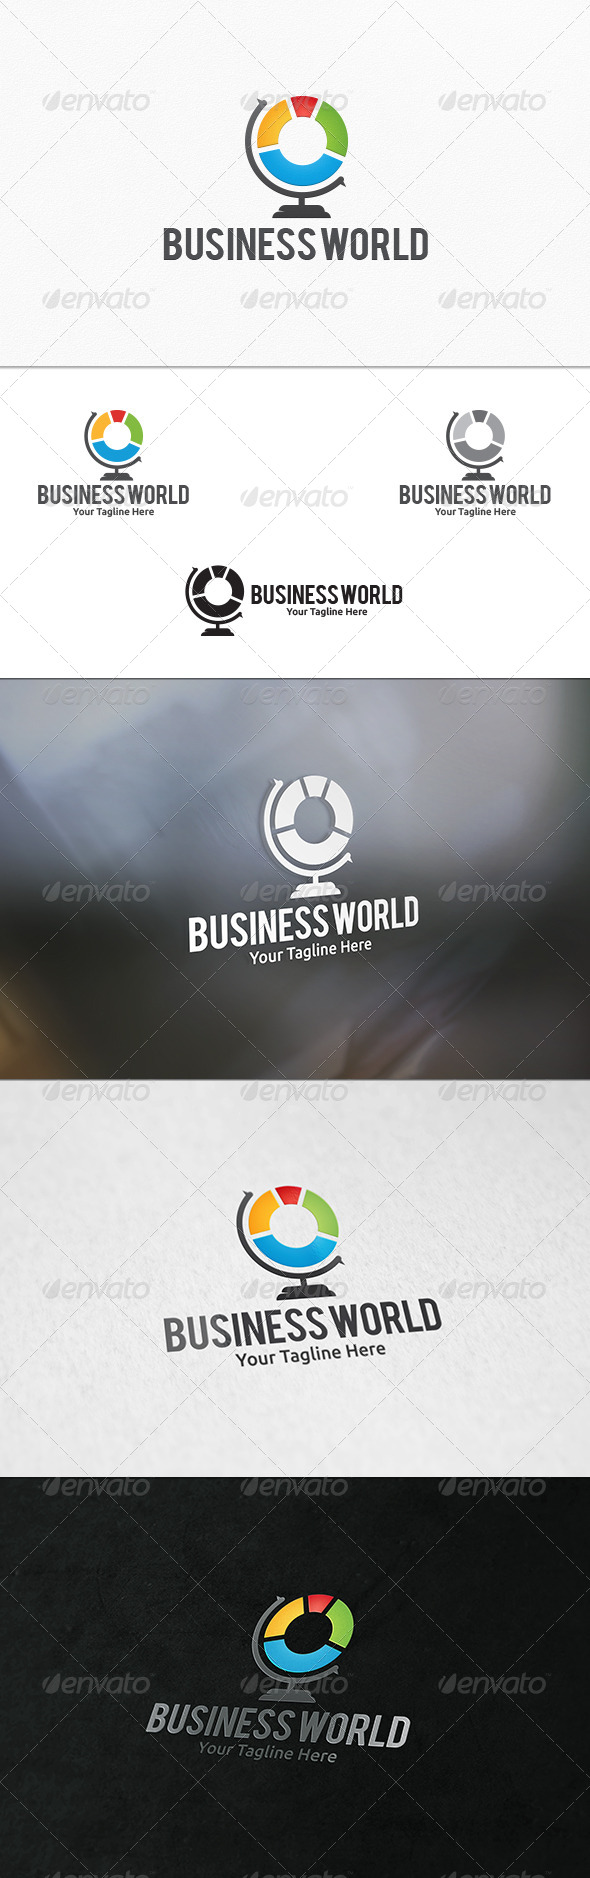 Business World - Logo Template